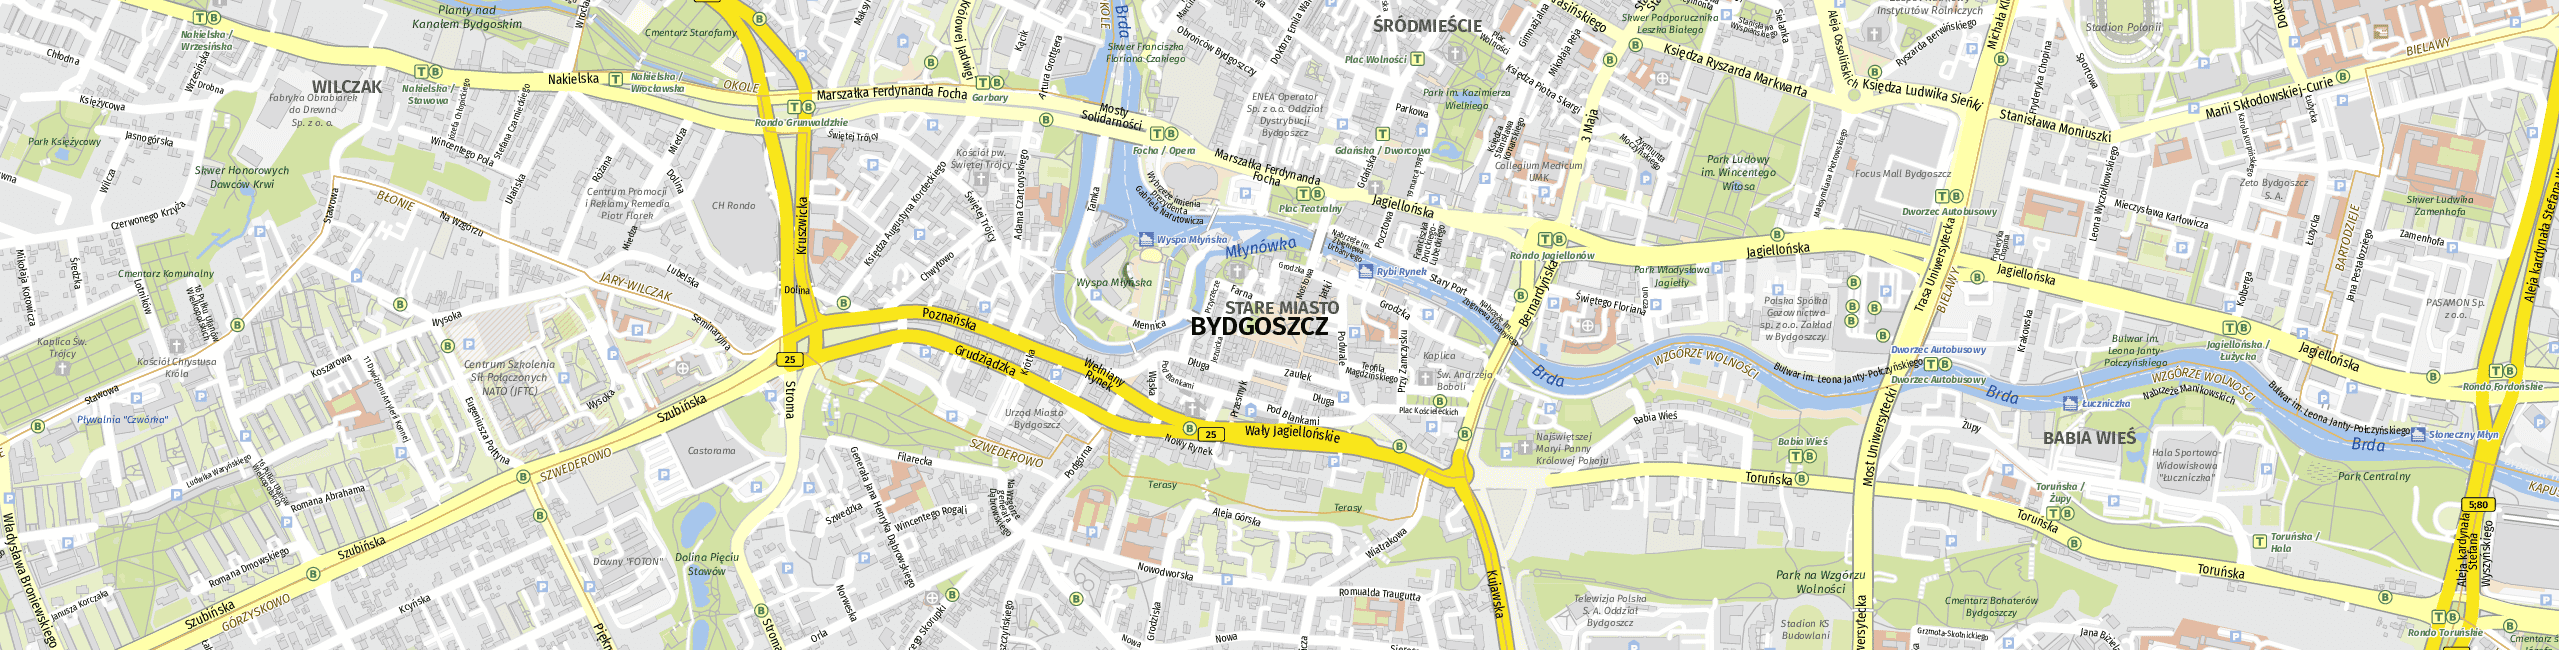 Stadtplan Bydgoszcz zum Downloaden.